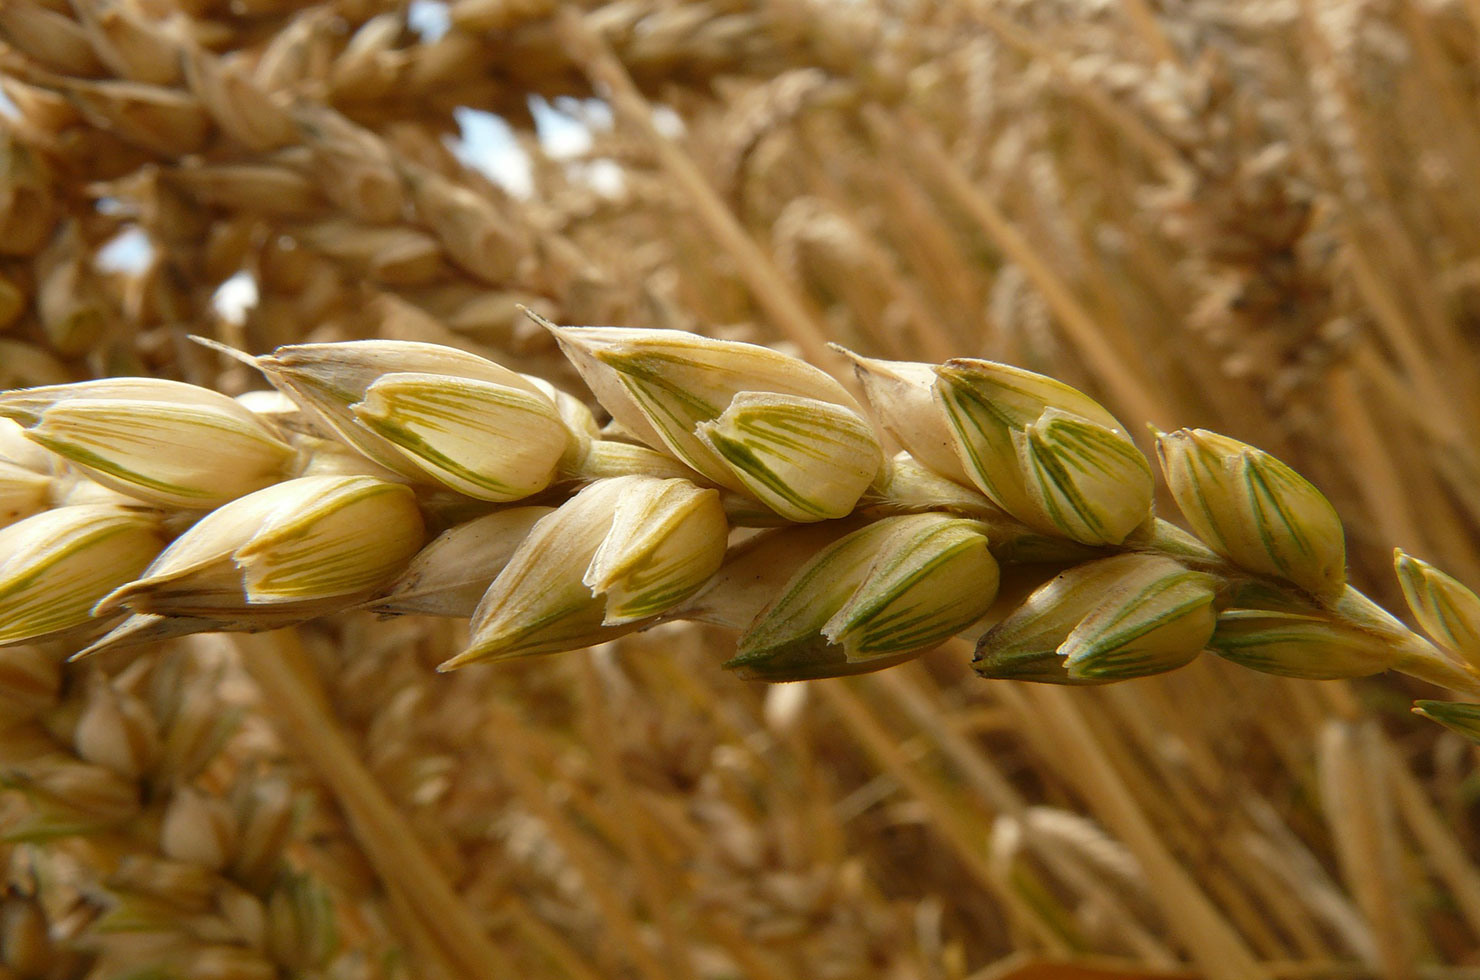 https://www.senwes.co.za/media/Global/images/Senwes/News/2021/10/wheat.jpg